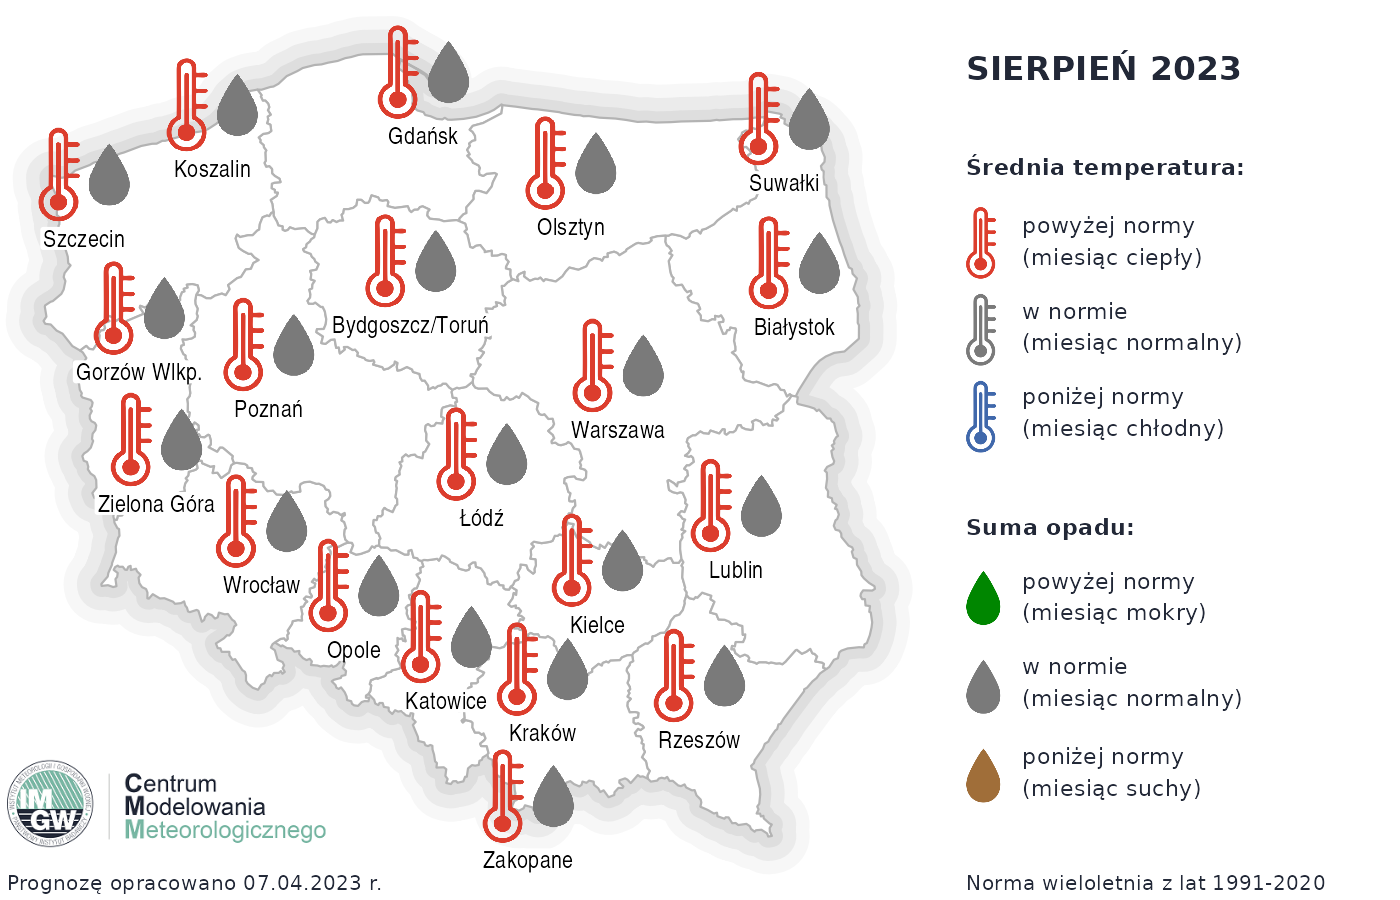 Rys. 4. Prognoza średniej miesięcznej temperatury powietrza i miesięcznej sumy opadów atmosferycznych na sierpień 2023 r. dla wybranych miast w Polsce